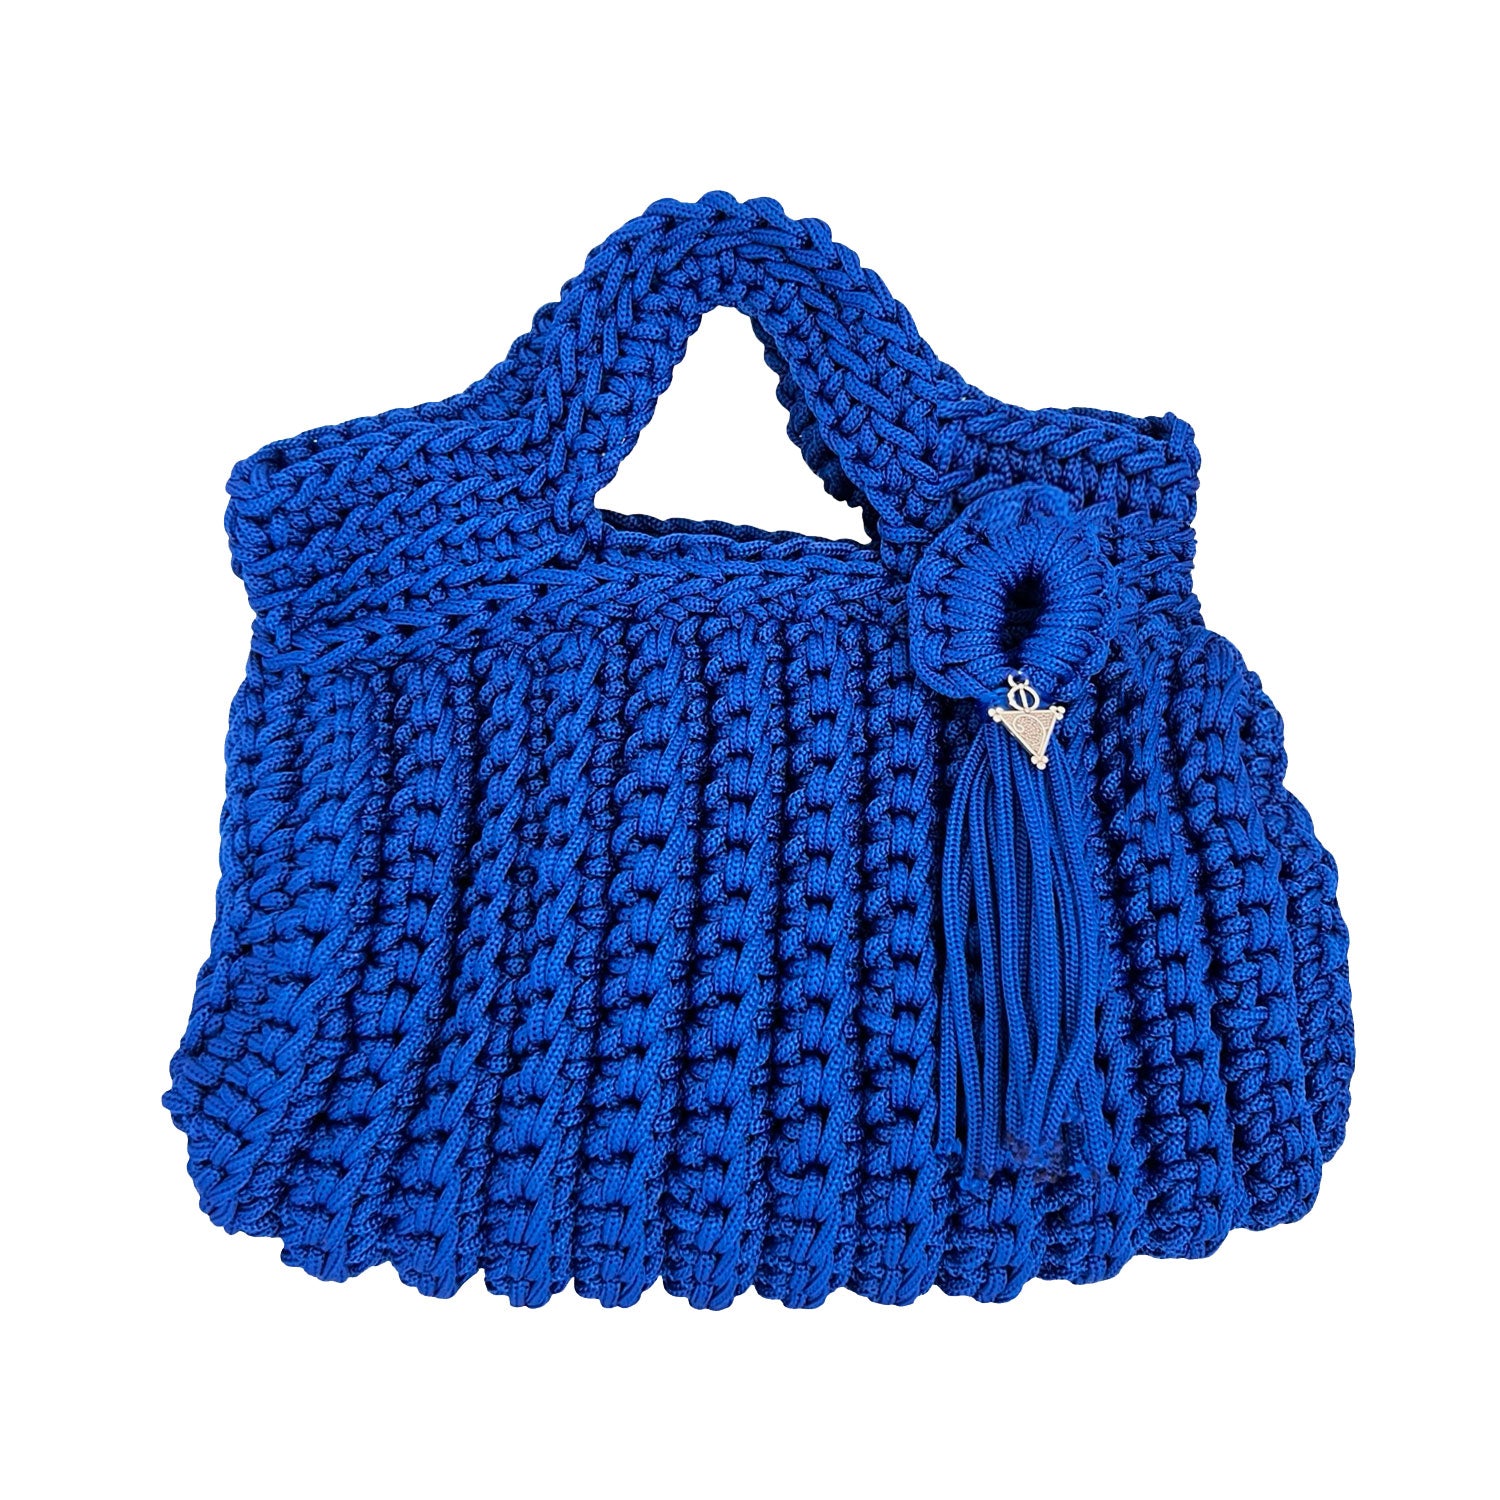 Mini Crochet Handbag in Royal Blue